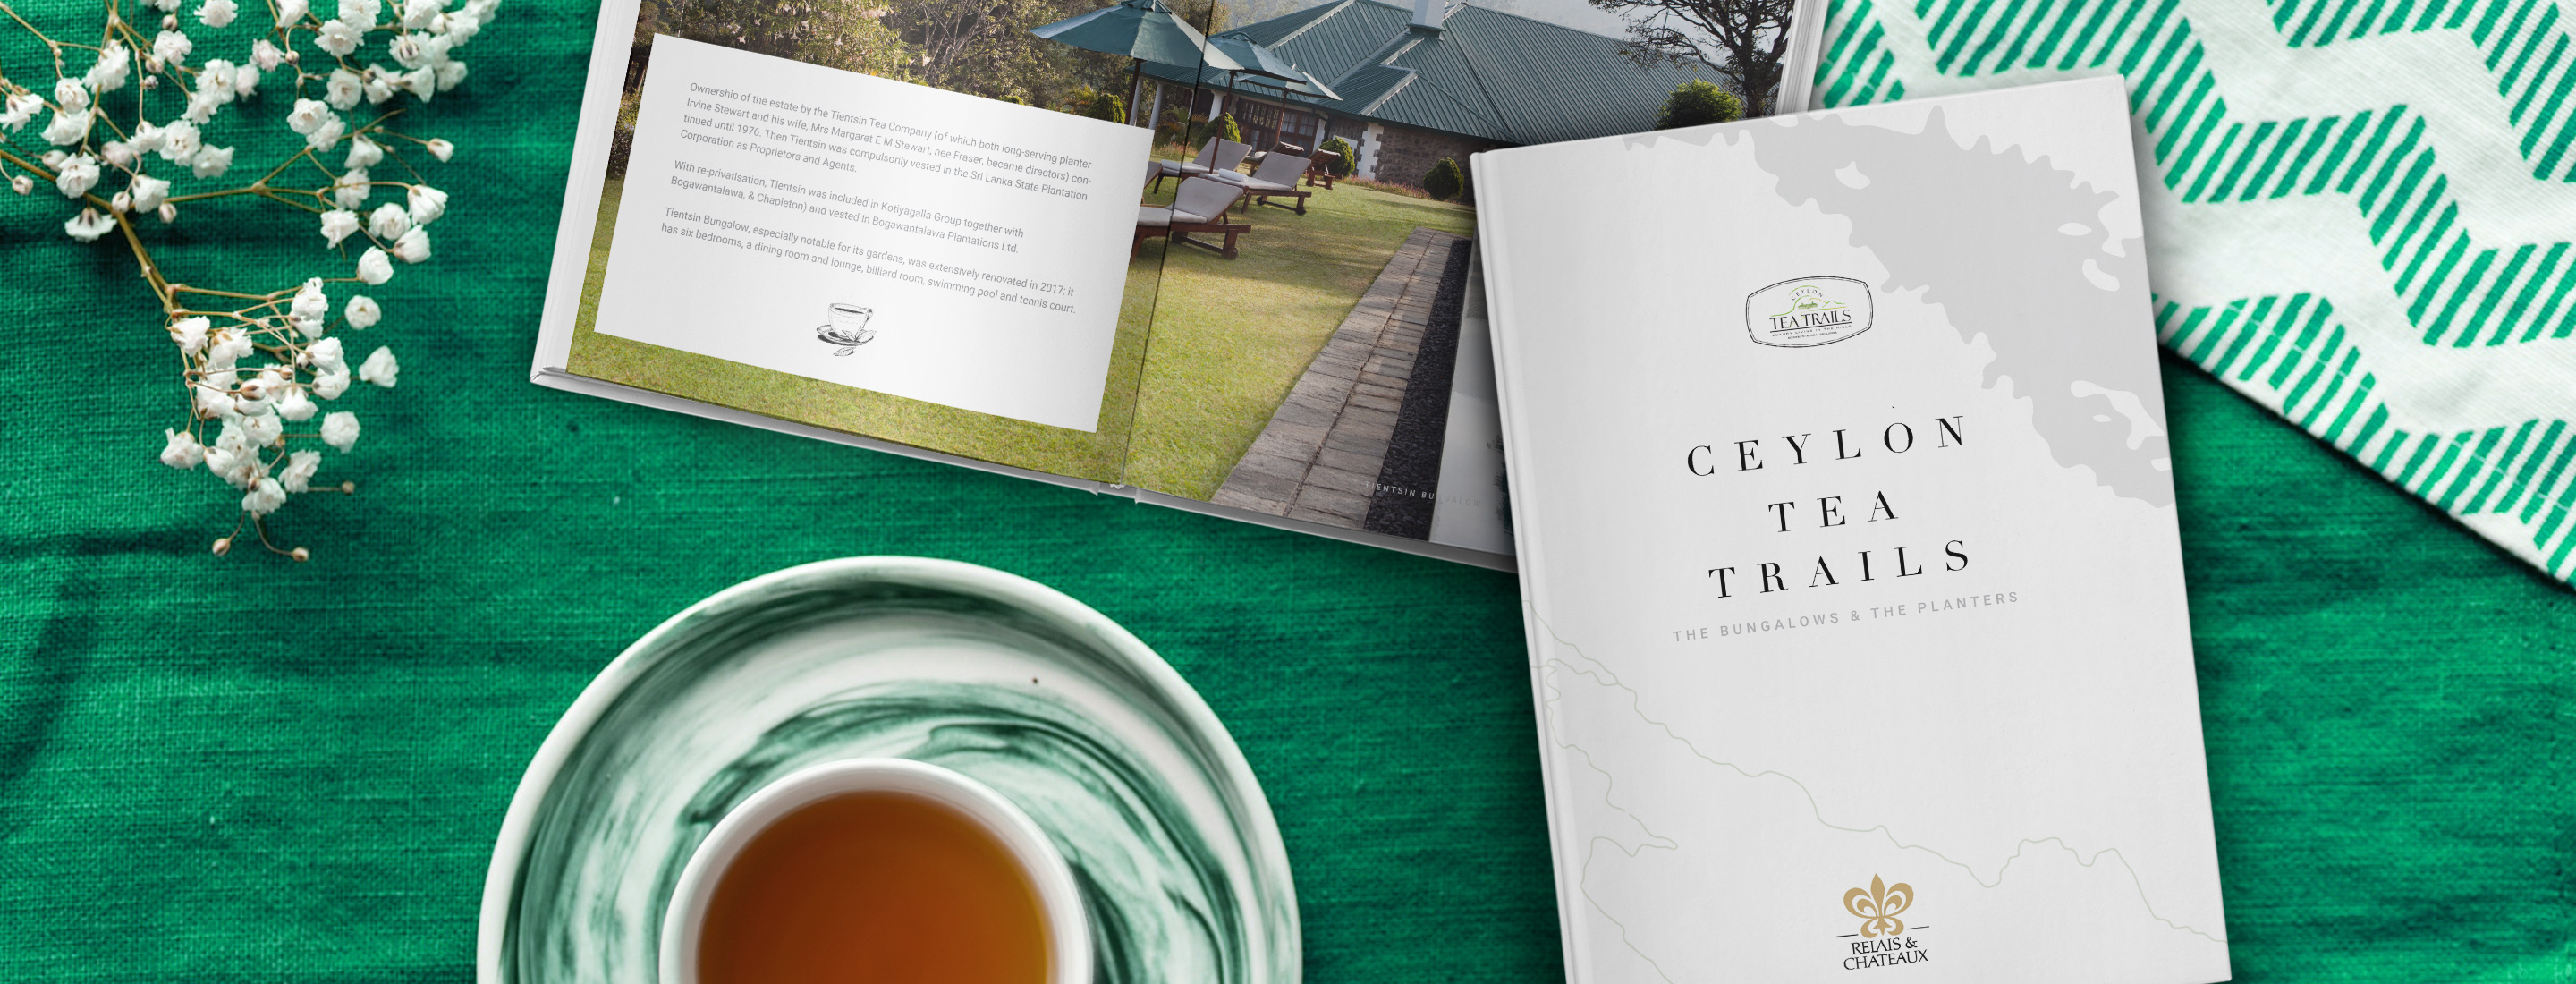 Ceylon Tea Trails Bungalows & Planters Book 